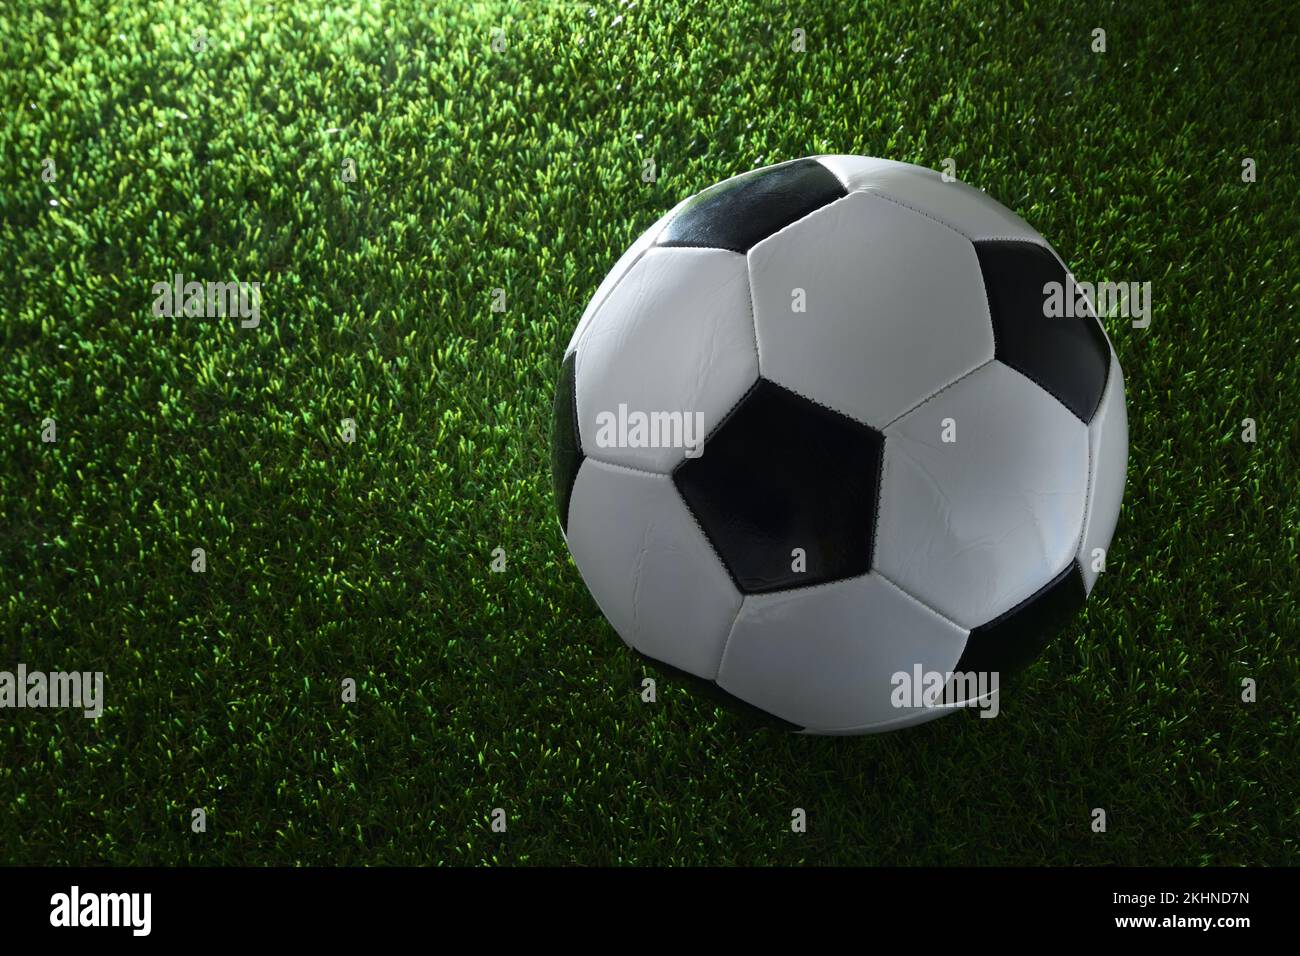 Klassischer Fußball auf Kunstrasen, beleuchtet durch einen Scheinwerfer. Draufsicht. Horizontale Zusammensetzung. Stockfoto